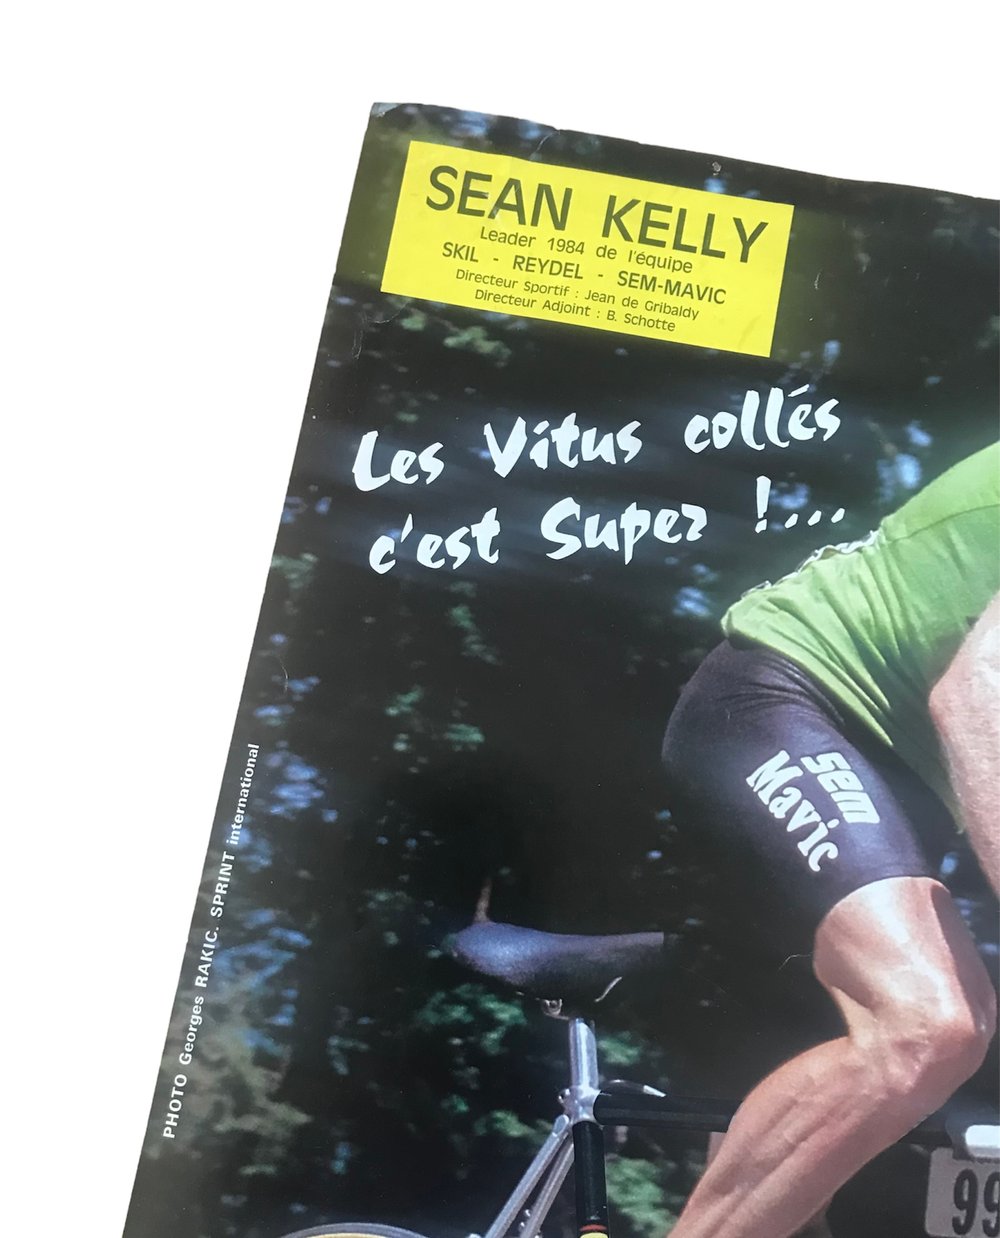 Rare advertising poster of Vitus brand ambassador Sean "King" Kelly